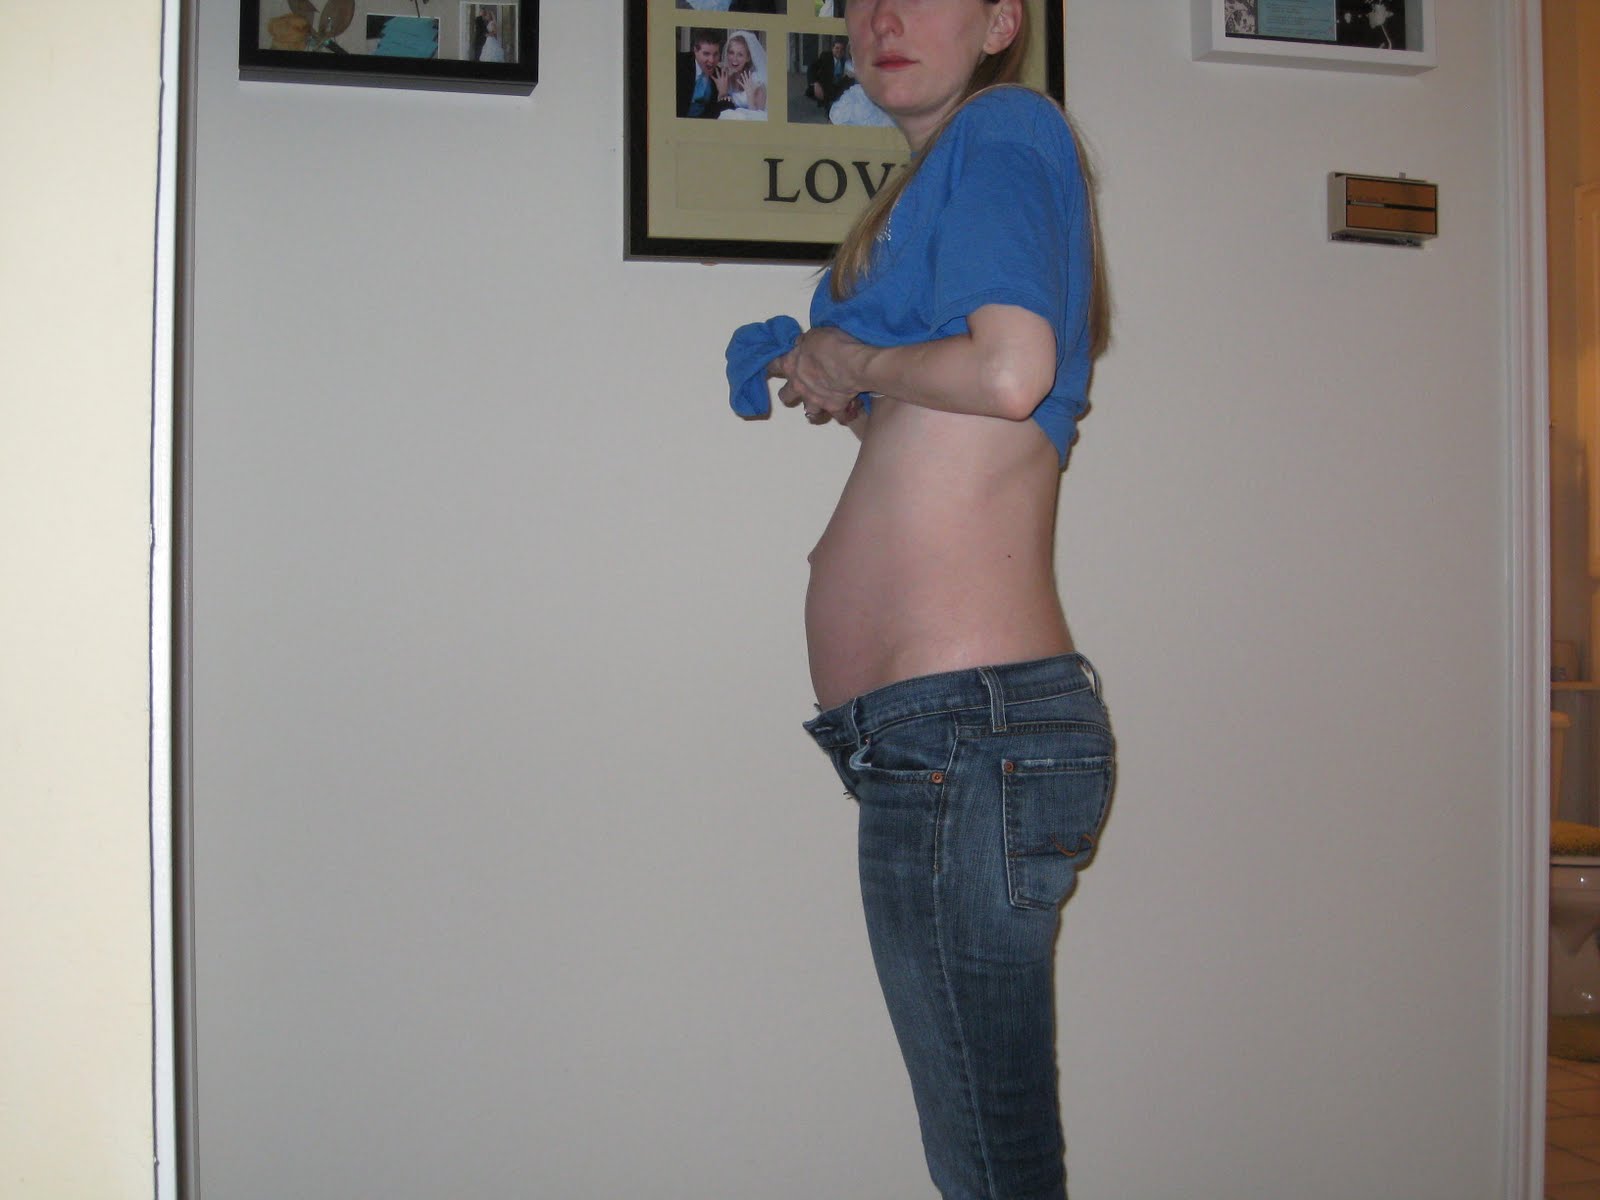 Вес на 23 неделе. Живот на 23 неделе беременности. Беременность 23 акушерские недели живот. Животик на 23 неделе беременности. Живот на 23 неделе беременности мальчиком.